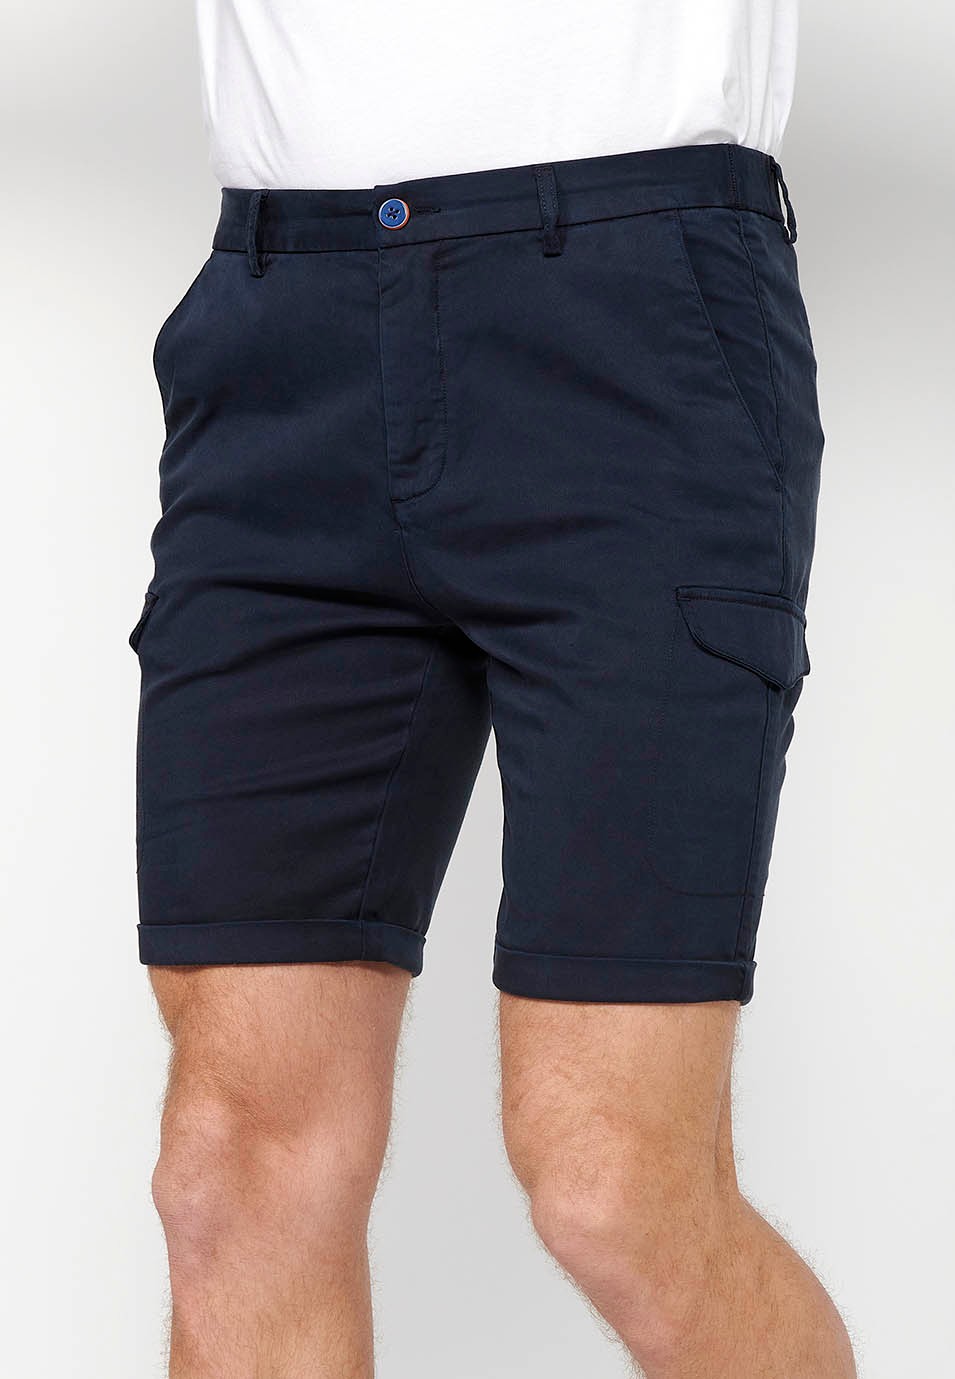 Pantalons curts amb Cintura engomada i tancament amb cremallera i botó amb Butxaques, dos laterals amb solapa de Color Navy per a Home